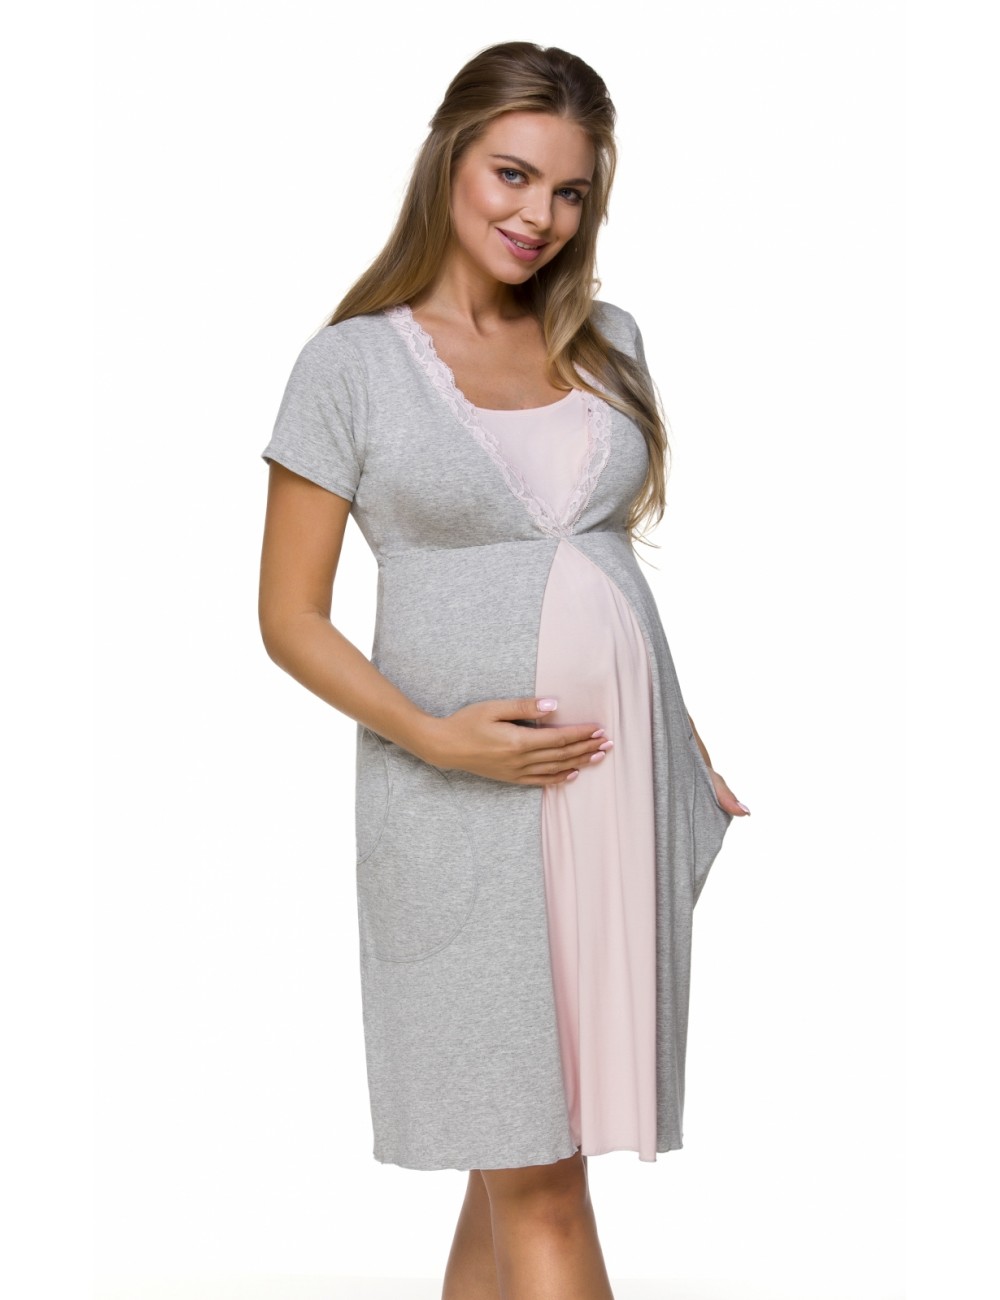 Kojící noční košile - Dámská mateřská košilka - Těhotenská móda 3125 - celá postava